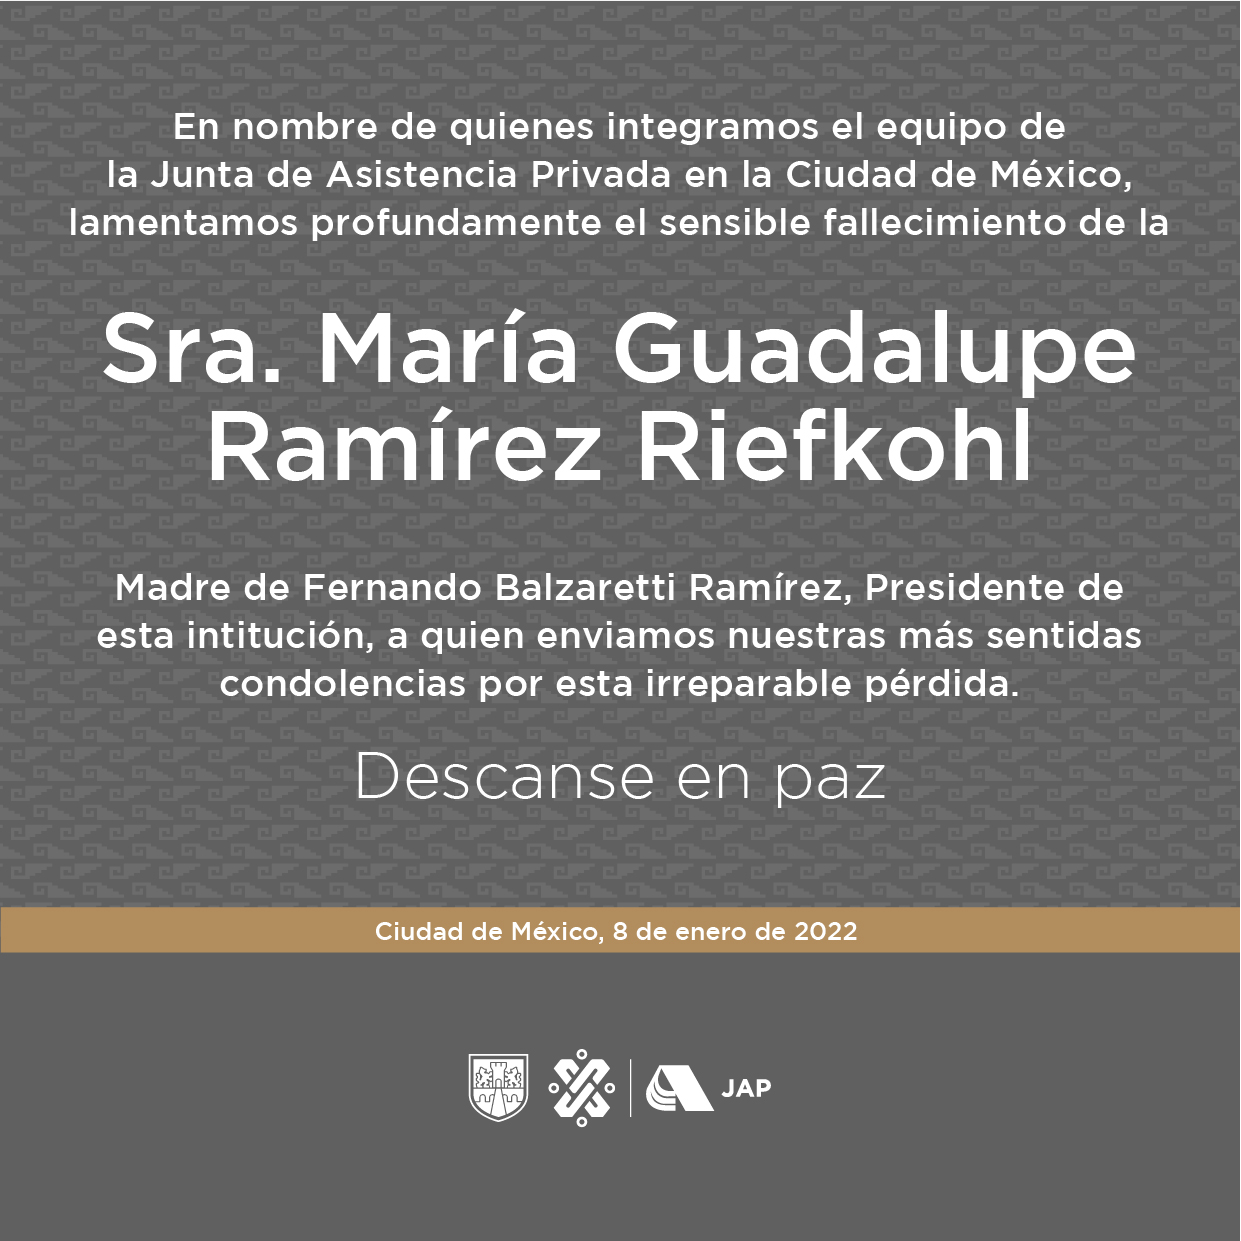 Lamentamos el sensible fallecimiento de la señora María Guadalupe Ramírez Riefkohl, madre de Fernando Balzaretti Ramírez, presidente de esta Junta